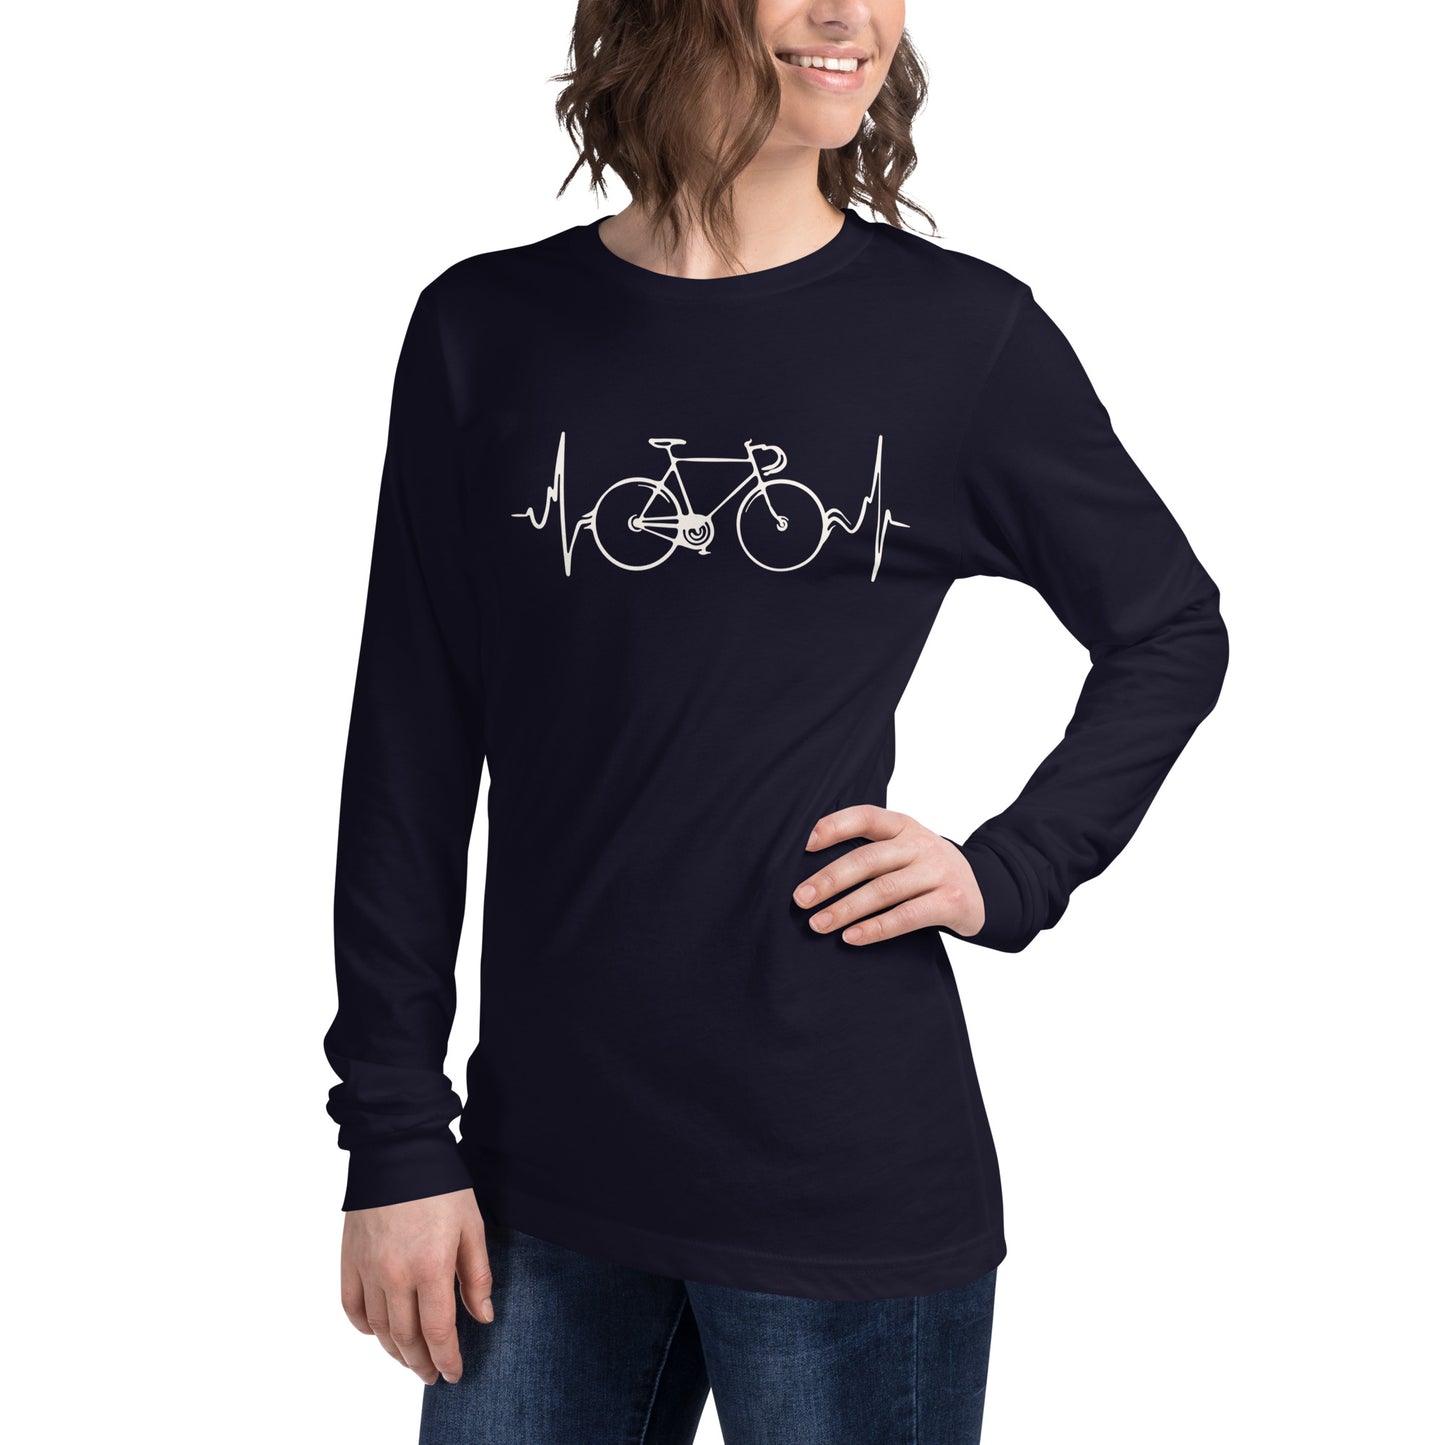 Ciclismo es vida camiseta unisex de manga larga